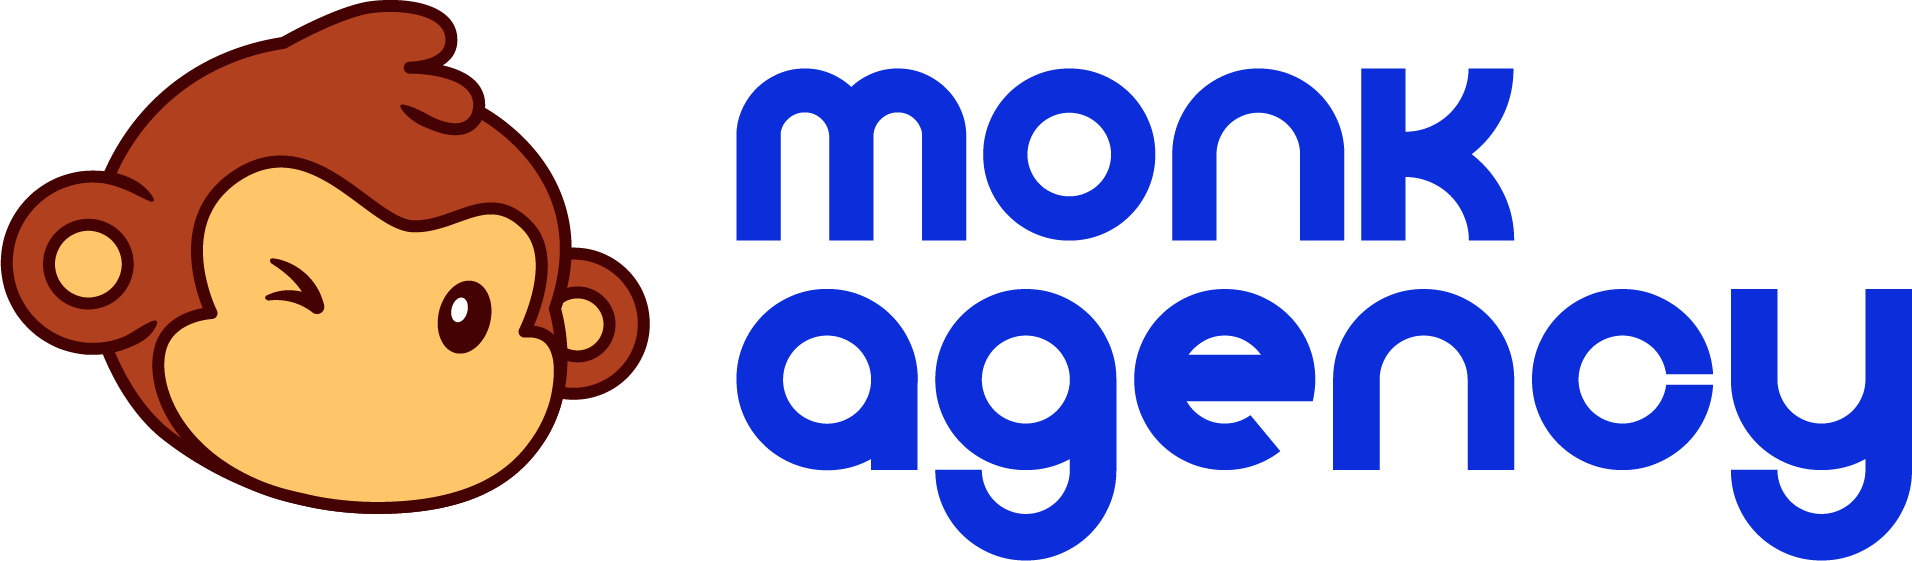 monk agency blue